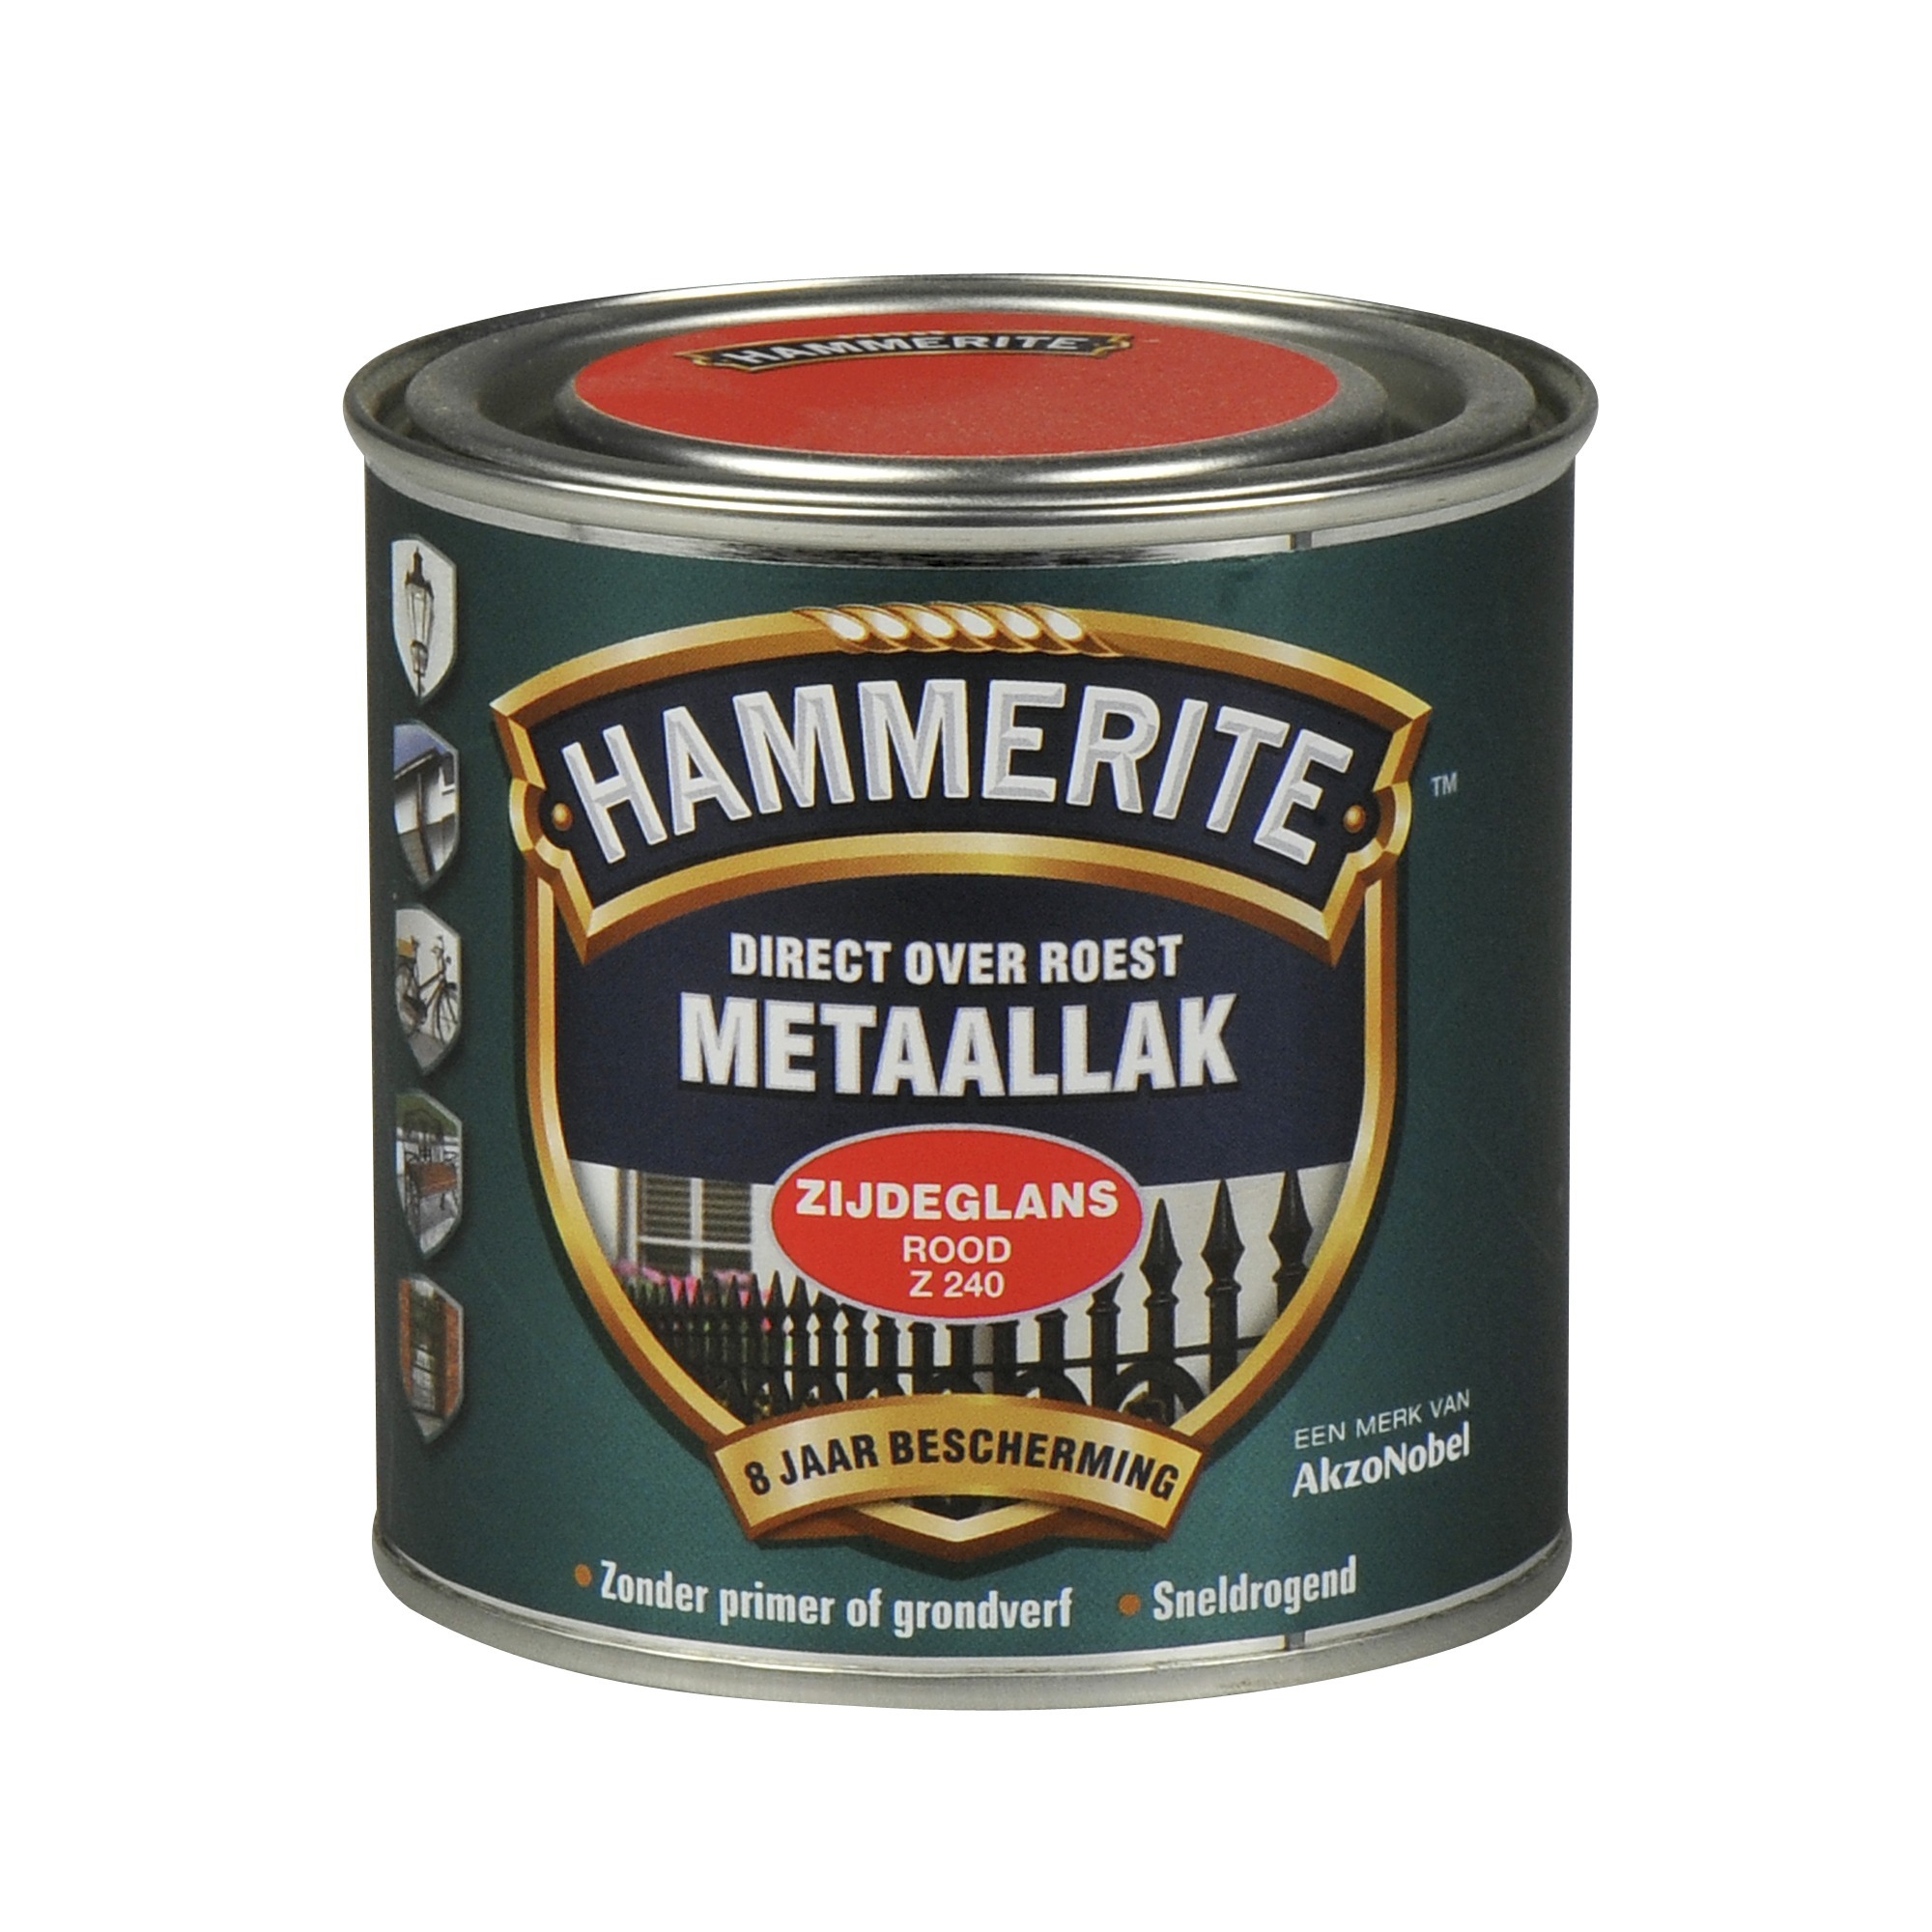 Hammerite direct over roest metaallak zijdeglans rood - 250 ml